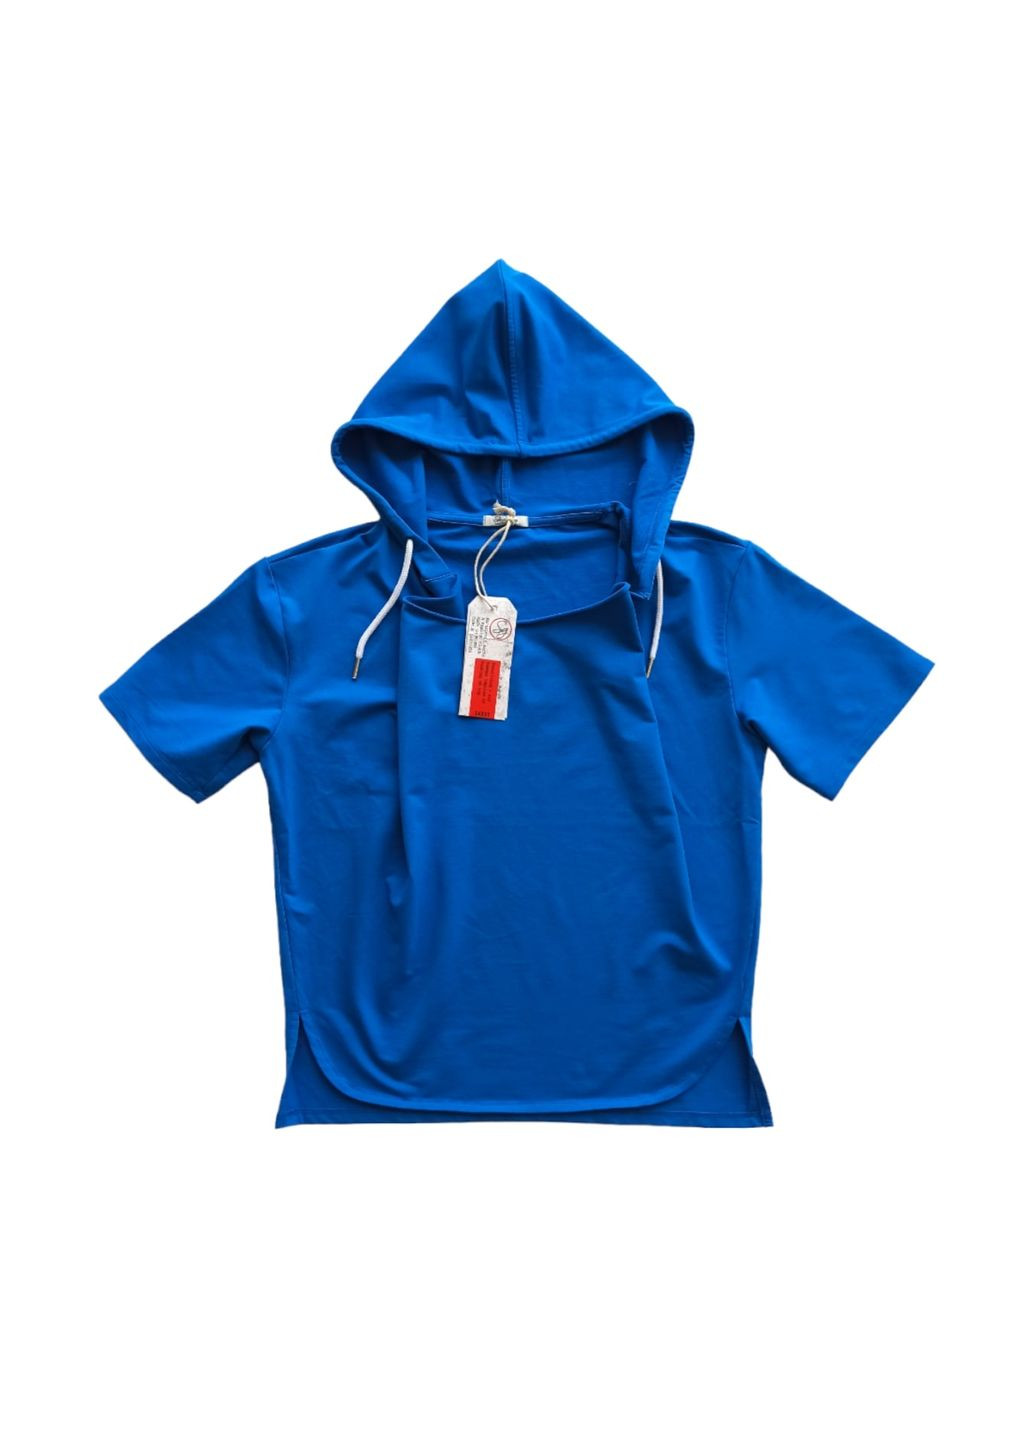 Синяя демисезонная футболка с капюшоном тощи sg5673 голубая синяя (146 см) Street Gang